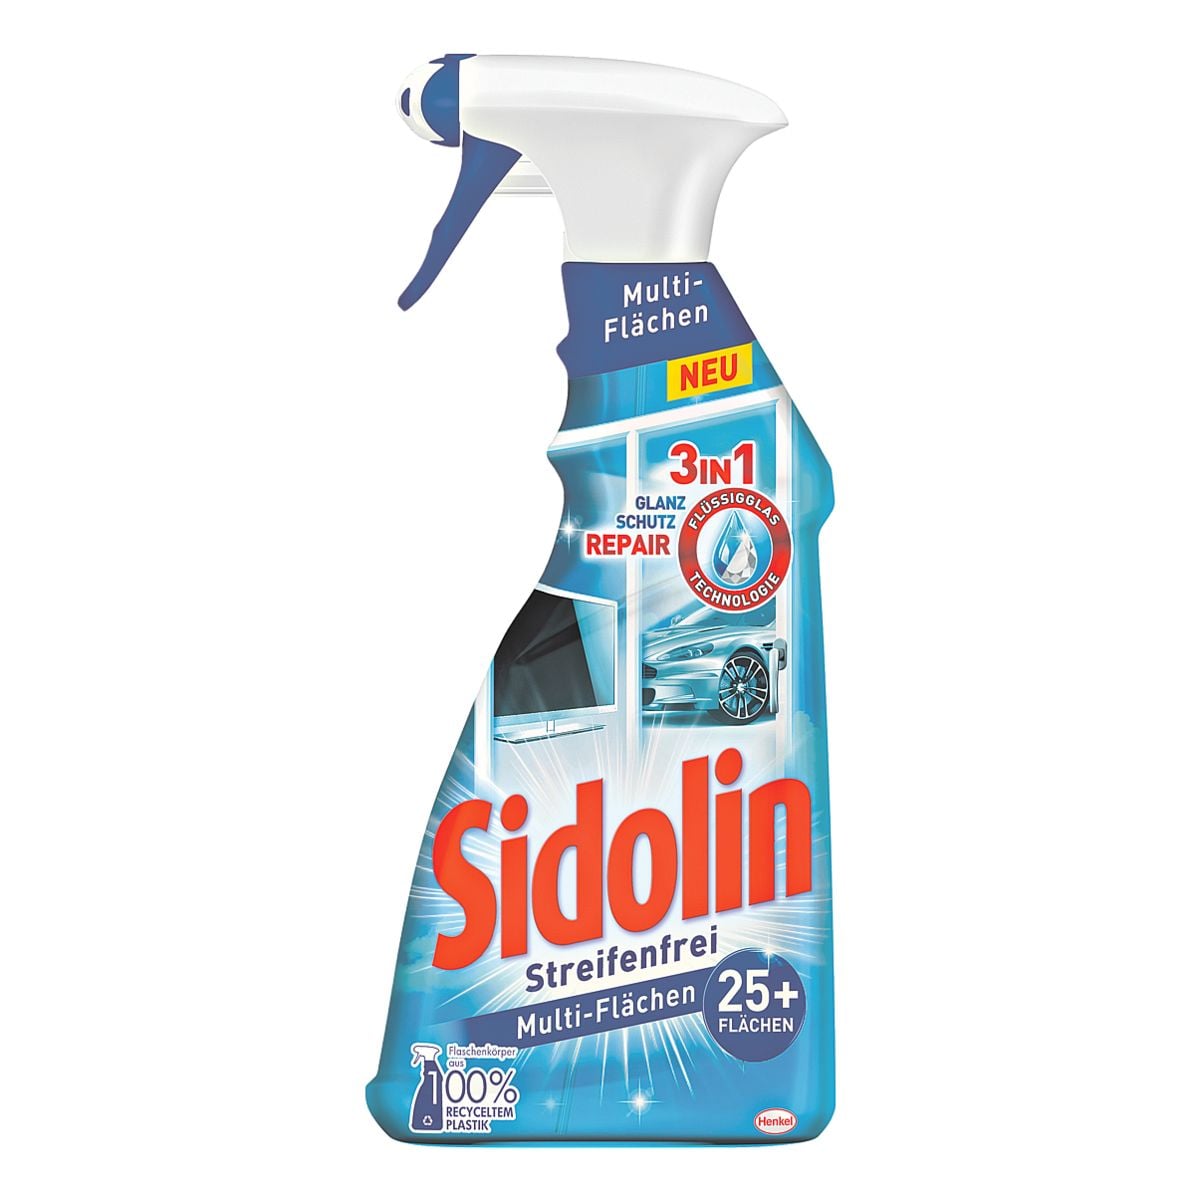 Sidolin Multi-Flchen Reiniger Streifenfrei